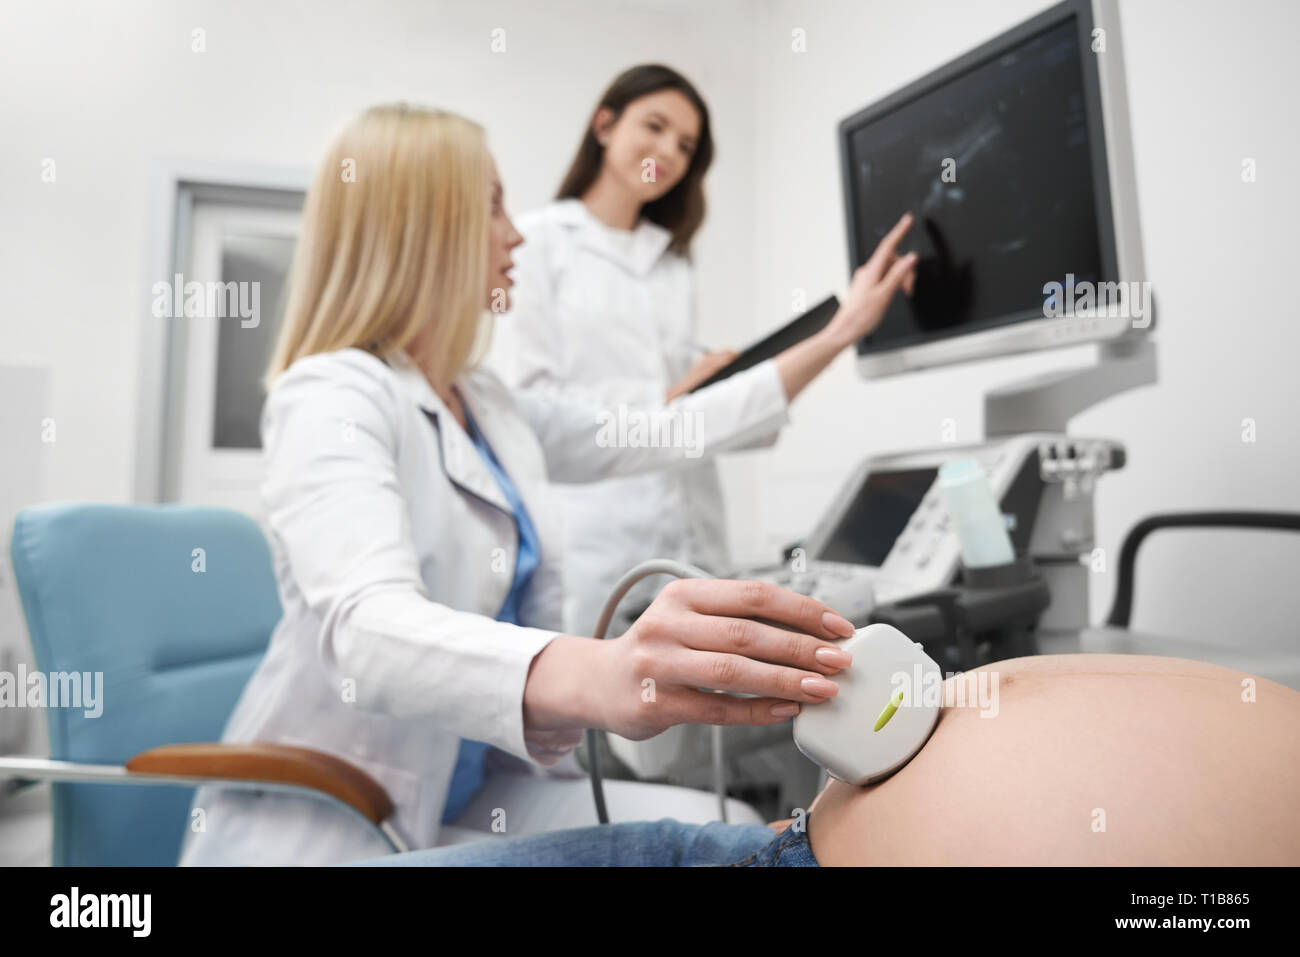 Medico professionale dispositivo di trattenimento, guardando il monitor della macchina ad ultrasuoni. Terapista esaminando l'addome della donna gravida. L'infermiera apposita cartella, lavorando in clinica medica. Foto Stock